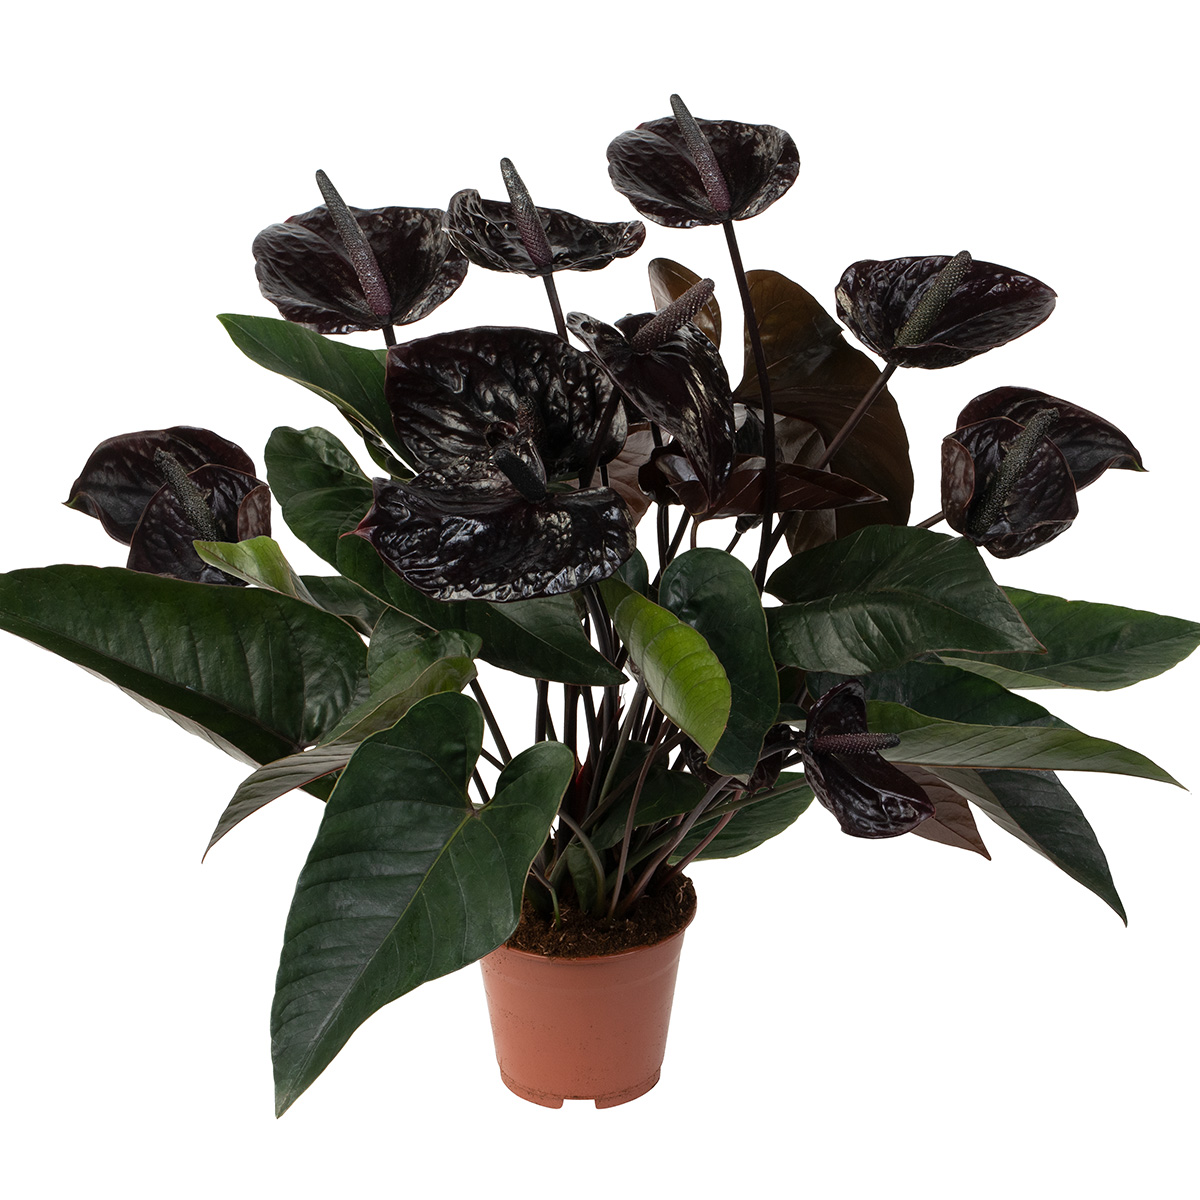 Dümmen Orange - Breeding Anthurium black winner